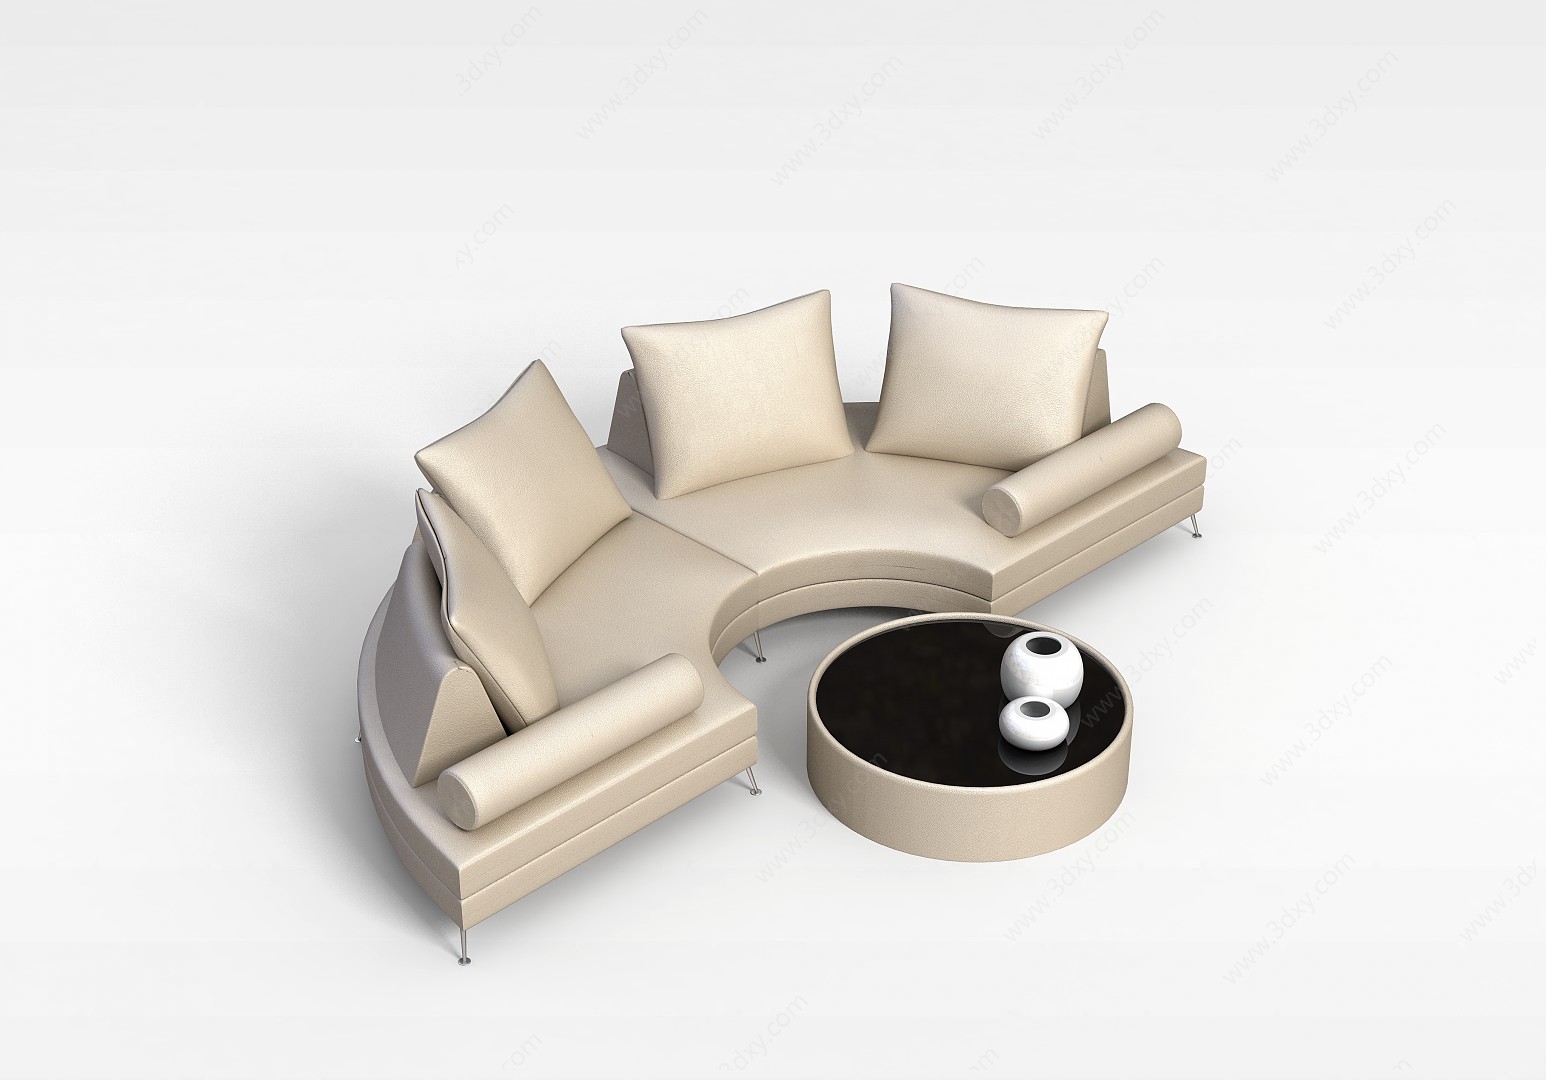 会议室沙发组合3D模型